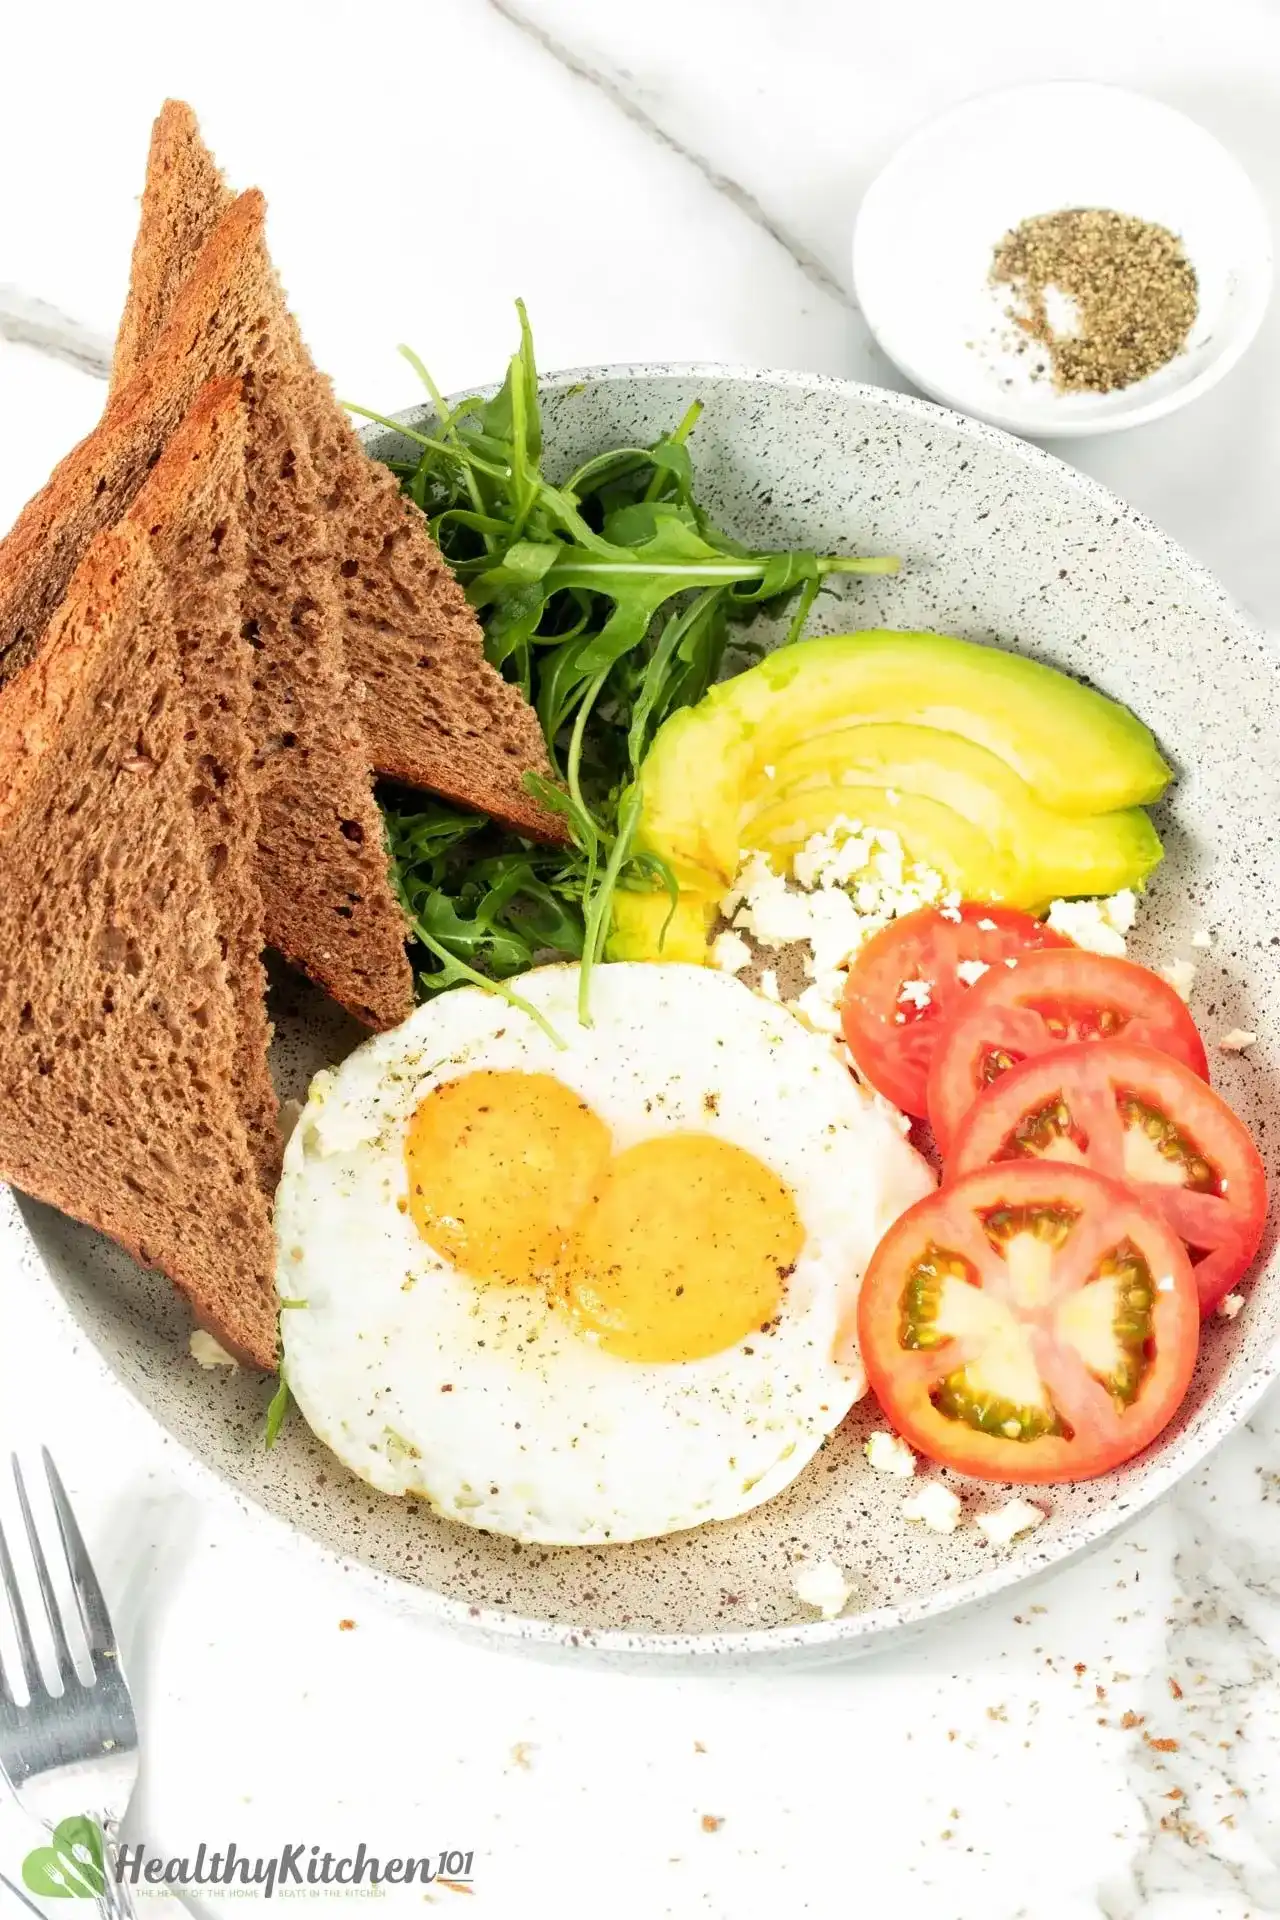 https://cdn.healthyrecipes101.com/recipes/images/eggs/healthy-sunny-side-up-eggs-recipe-claurlnj200hbdf1baolb9fau.webp